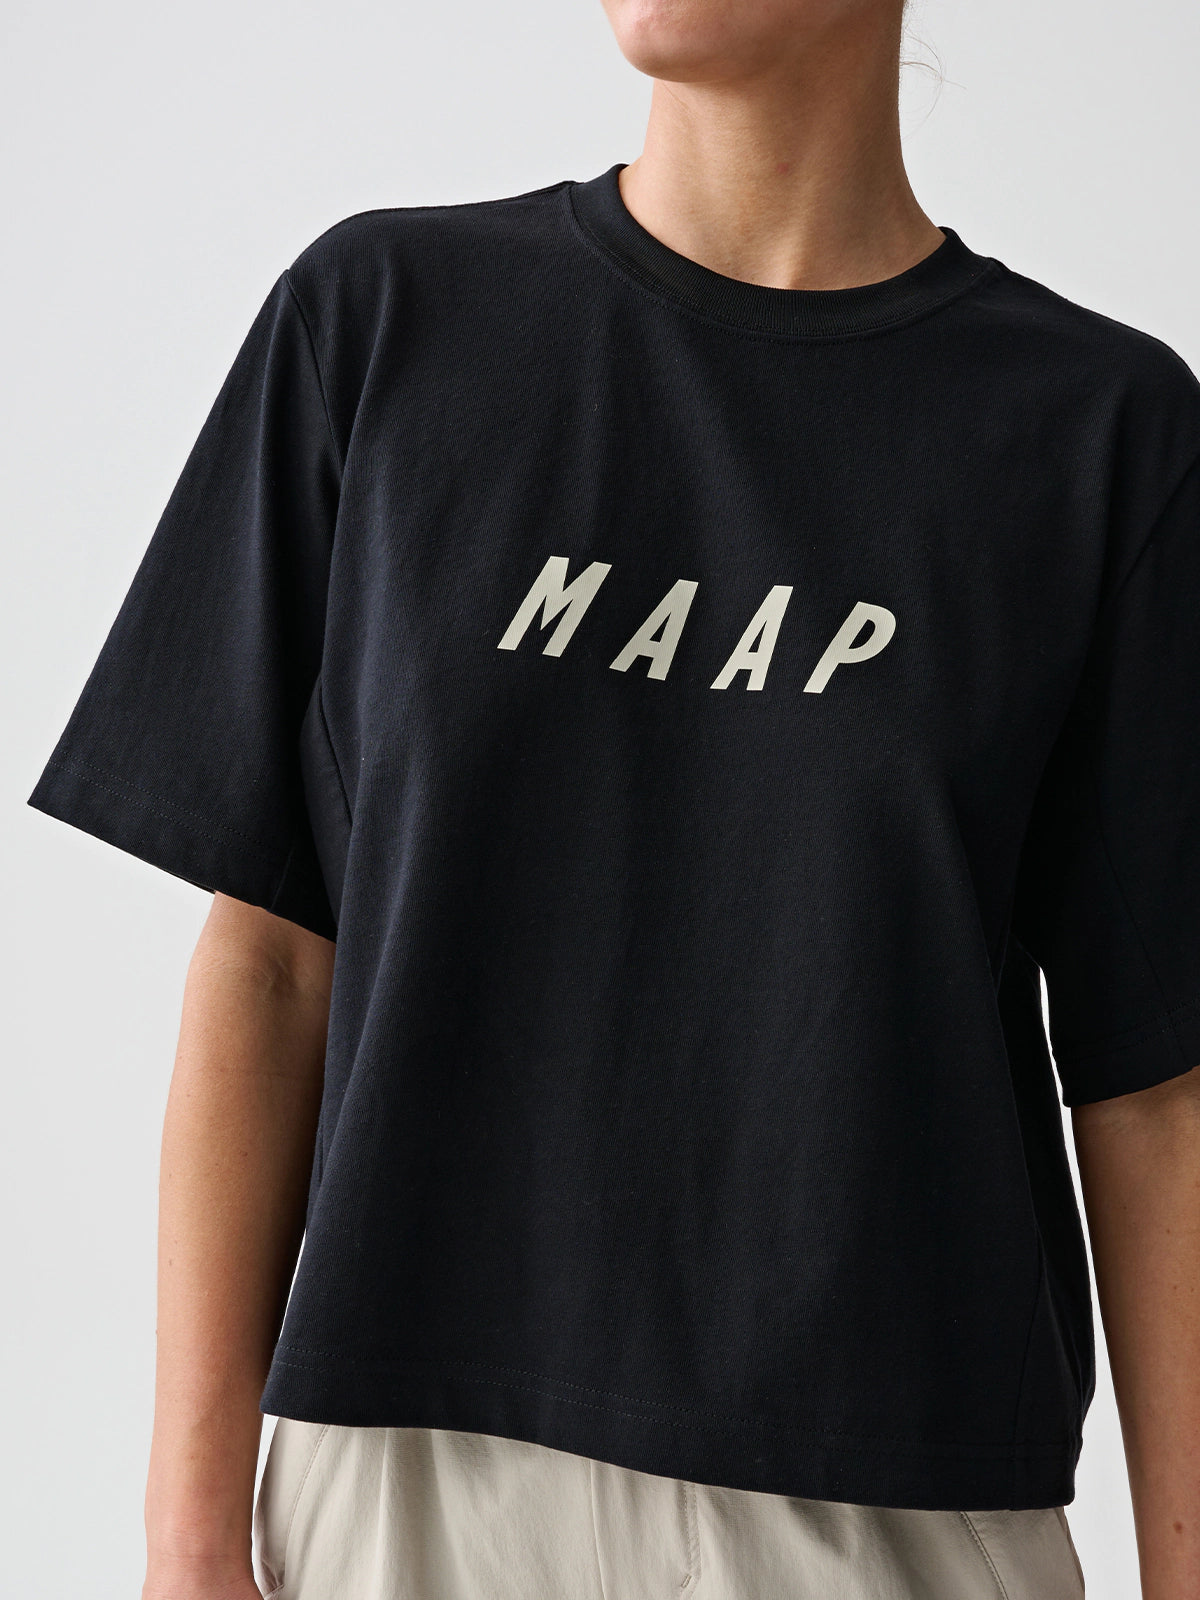 MAAP Lifeplus-Wahoo Replica ロングスリーブ レディース Tシャツ | CYCLISM